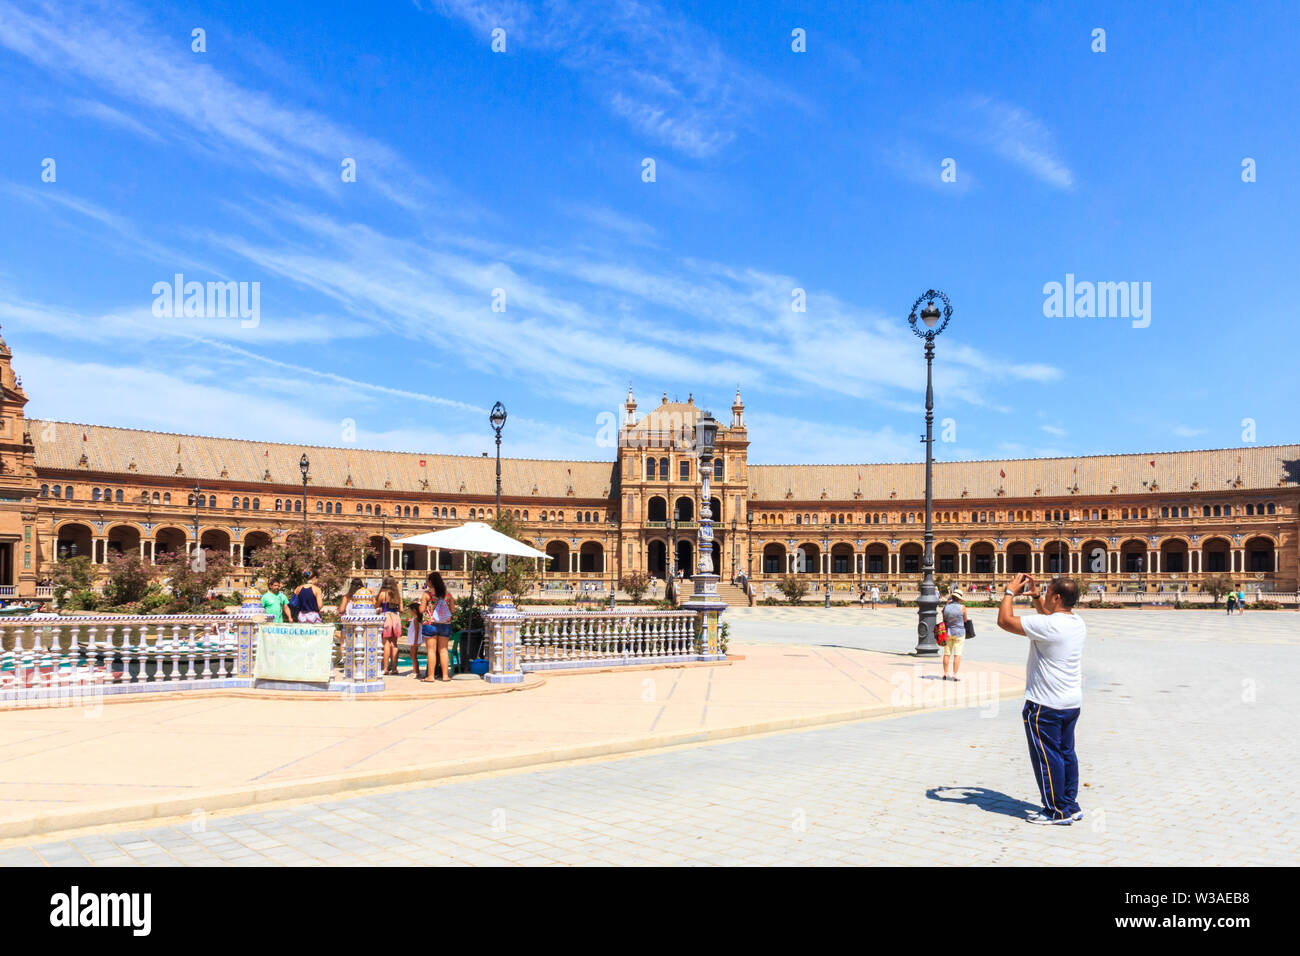 Séville, Espagne - 3 septembre 2015 : Prendre une photo dans la Plaza de Espana. La Plaza se trouve dans le Parque de María Luisa Banque D'Images